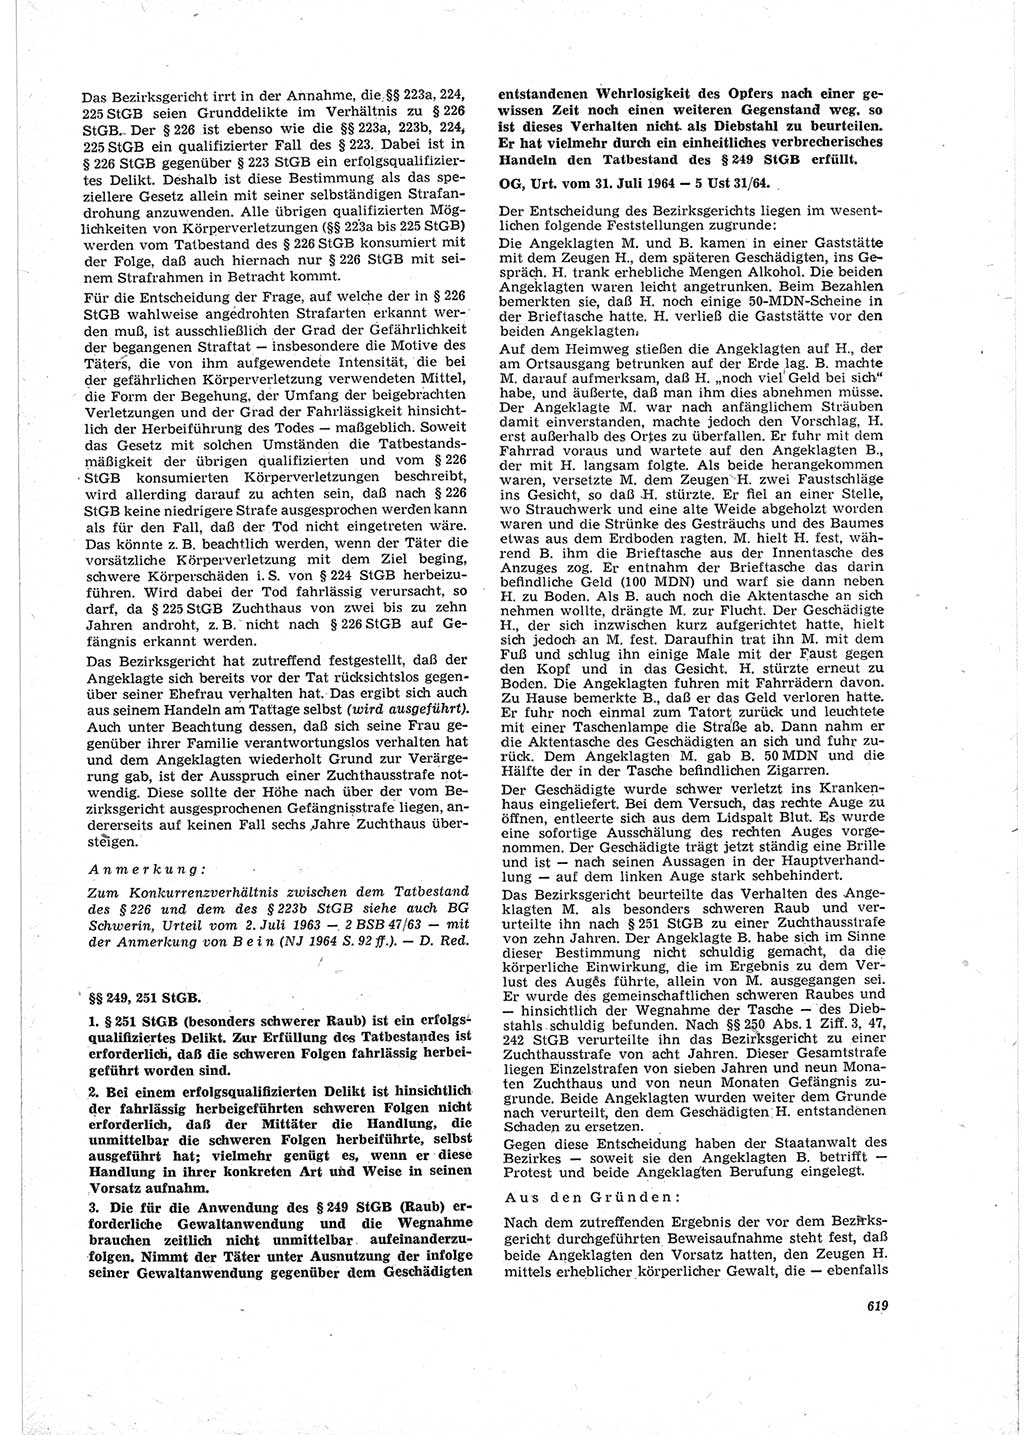 Neue Justiz (NJ), Zeitschrift für Recht und Rechtswissenschaft [Deutsche Demokratische Republik (DDR)], 19. Jahrgang 1965, Seite 619 (NJ DDR 1965, S. 619)